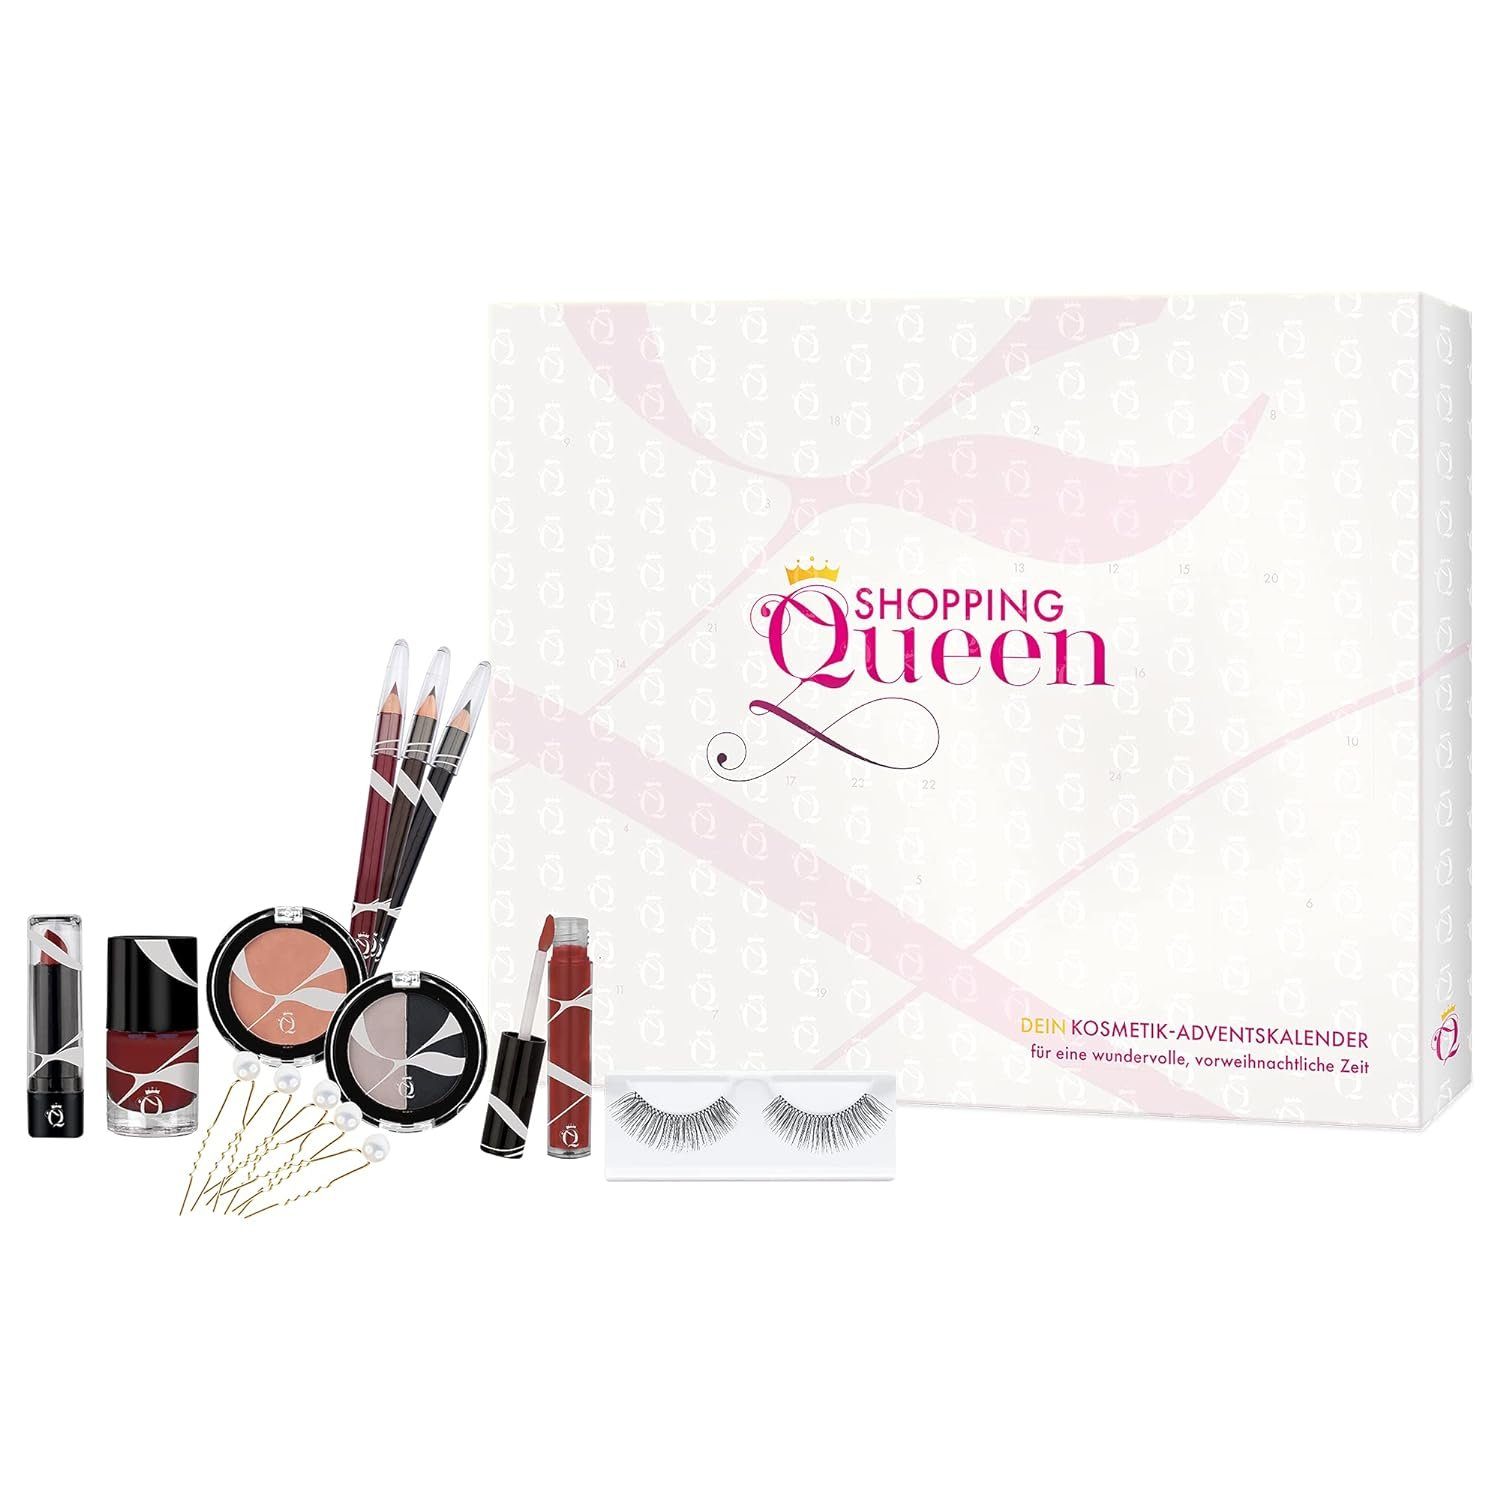 Shopping Queen Adventskalender Shopping Kosmetik-Adventskalender Queen Dein 